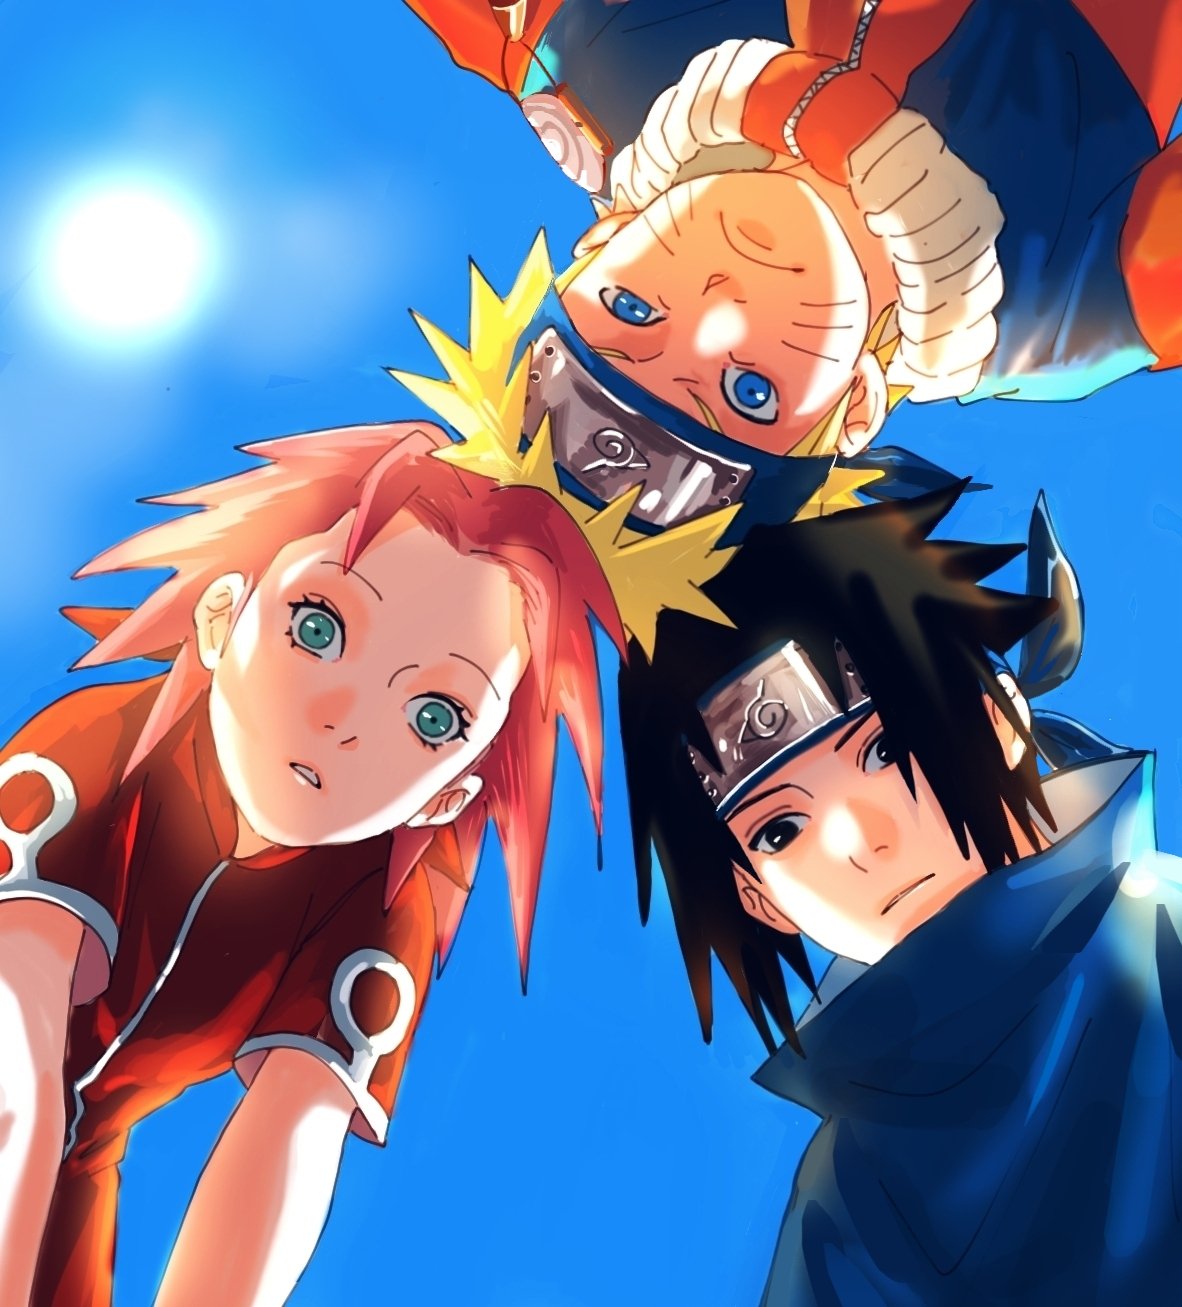 Todo dia mangá de Naruto colorido ㊋ (@narutocolorido) / X